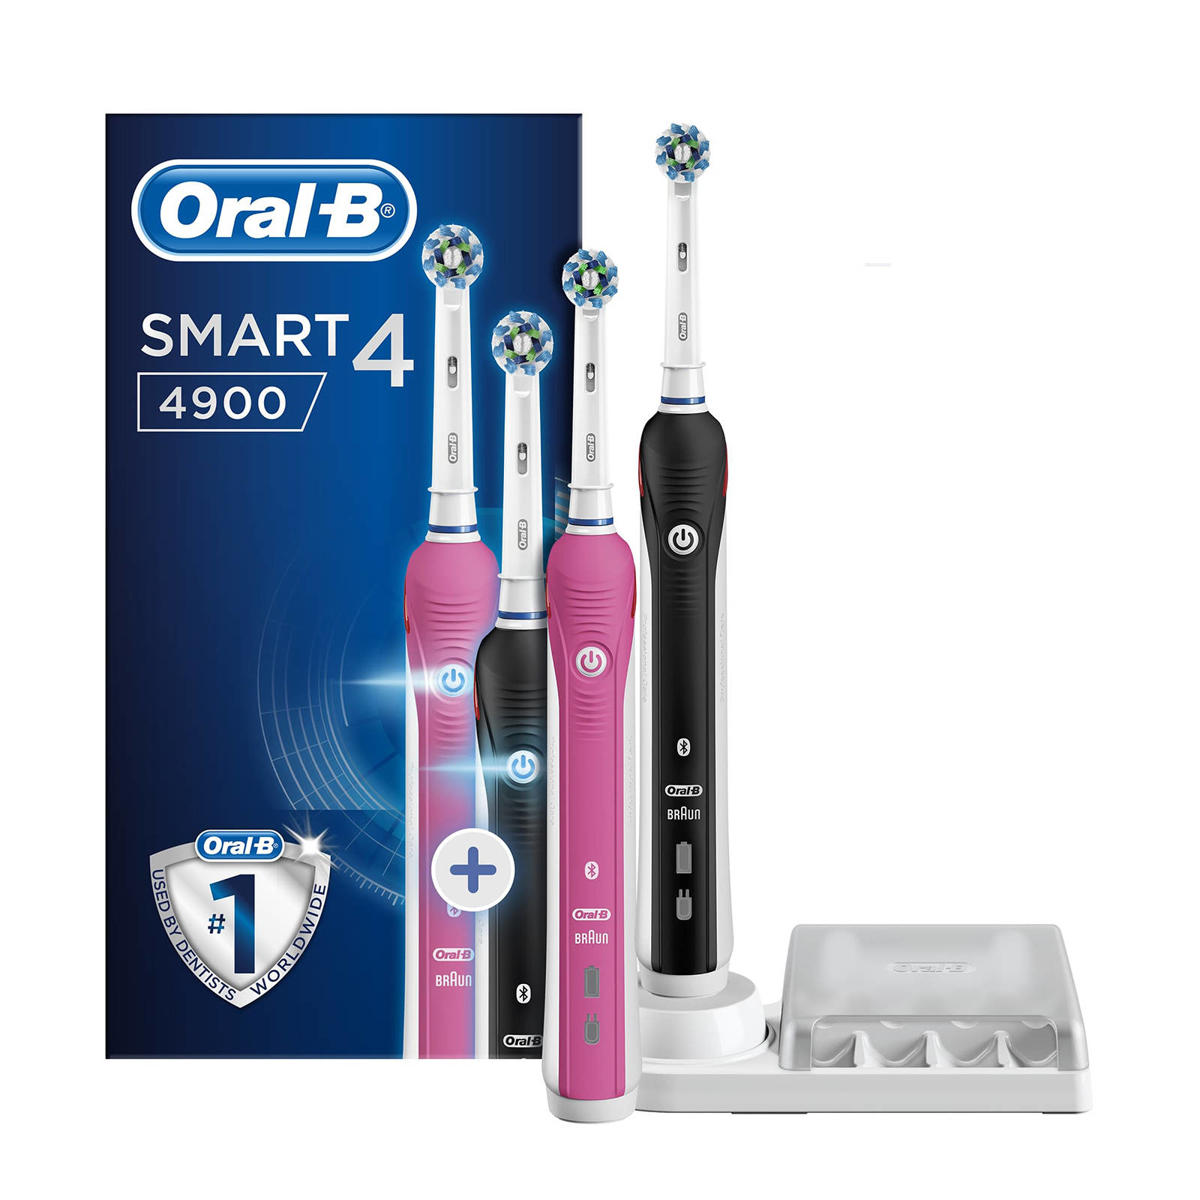 Meting hoesten analoog Oral-B SMART 4 4900N elektrische tandenborstel duoverpakking | wehkamp